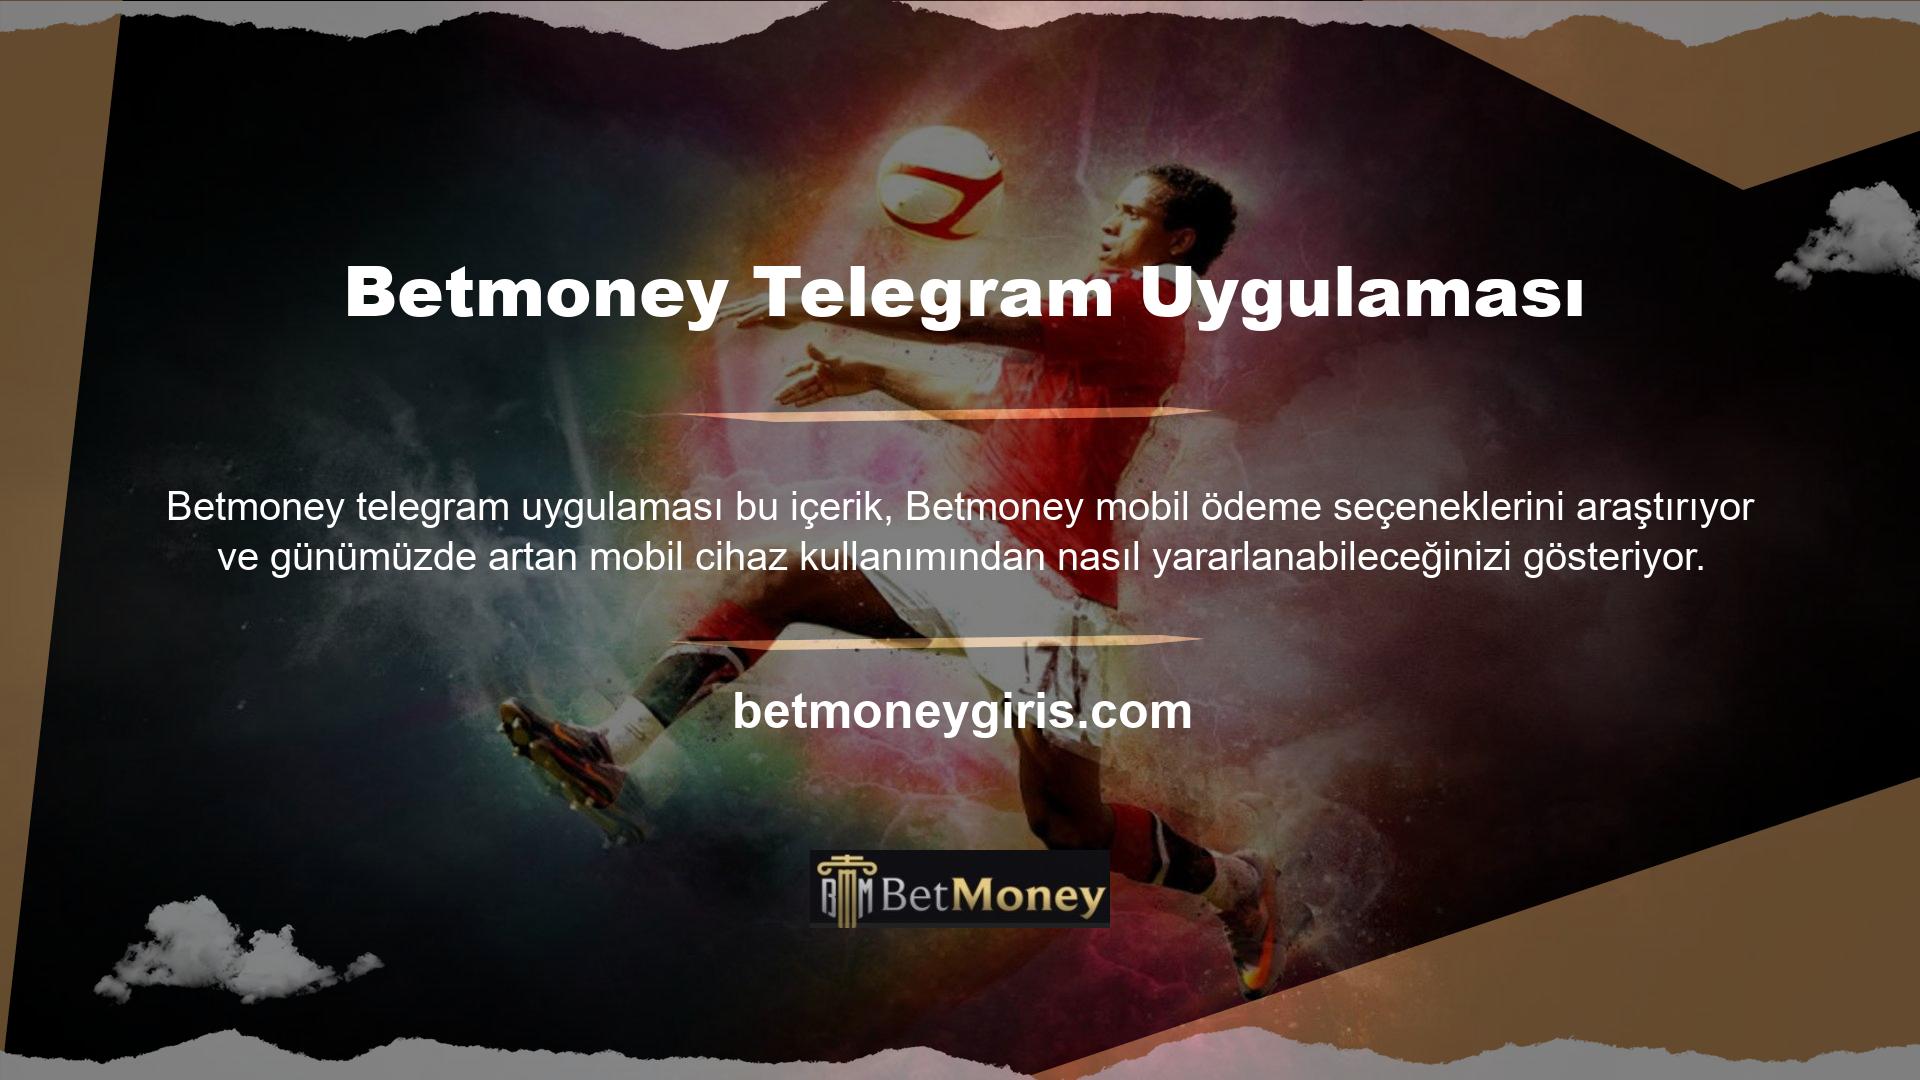 Betmoney casino sitesi mobil ödeme oyunlarıyla çalışmakta olup yatırımcıların tercih ettiği mobil ödeme işlemleri için birçok alternatif bulunmaktadır